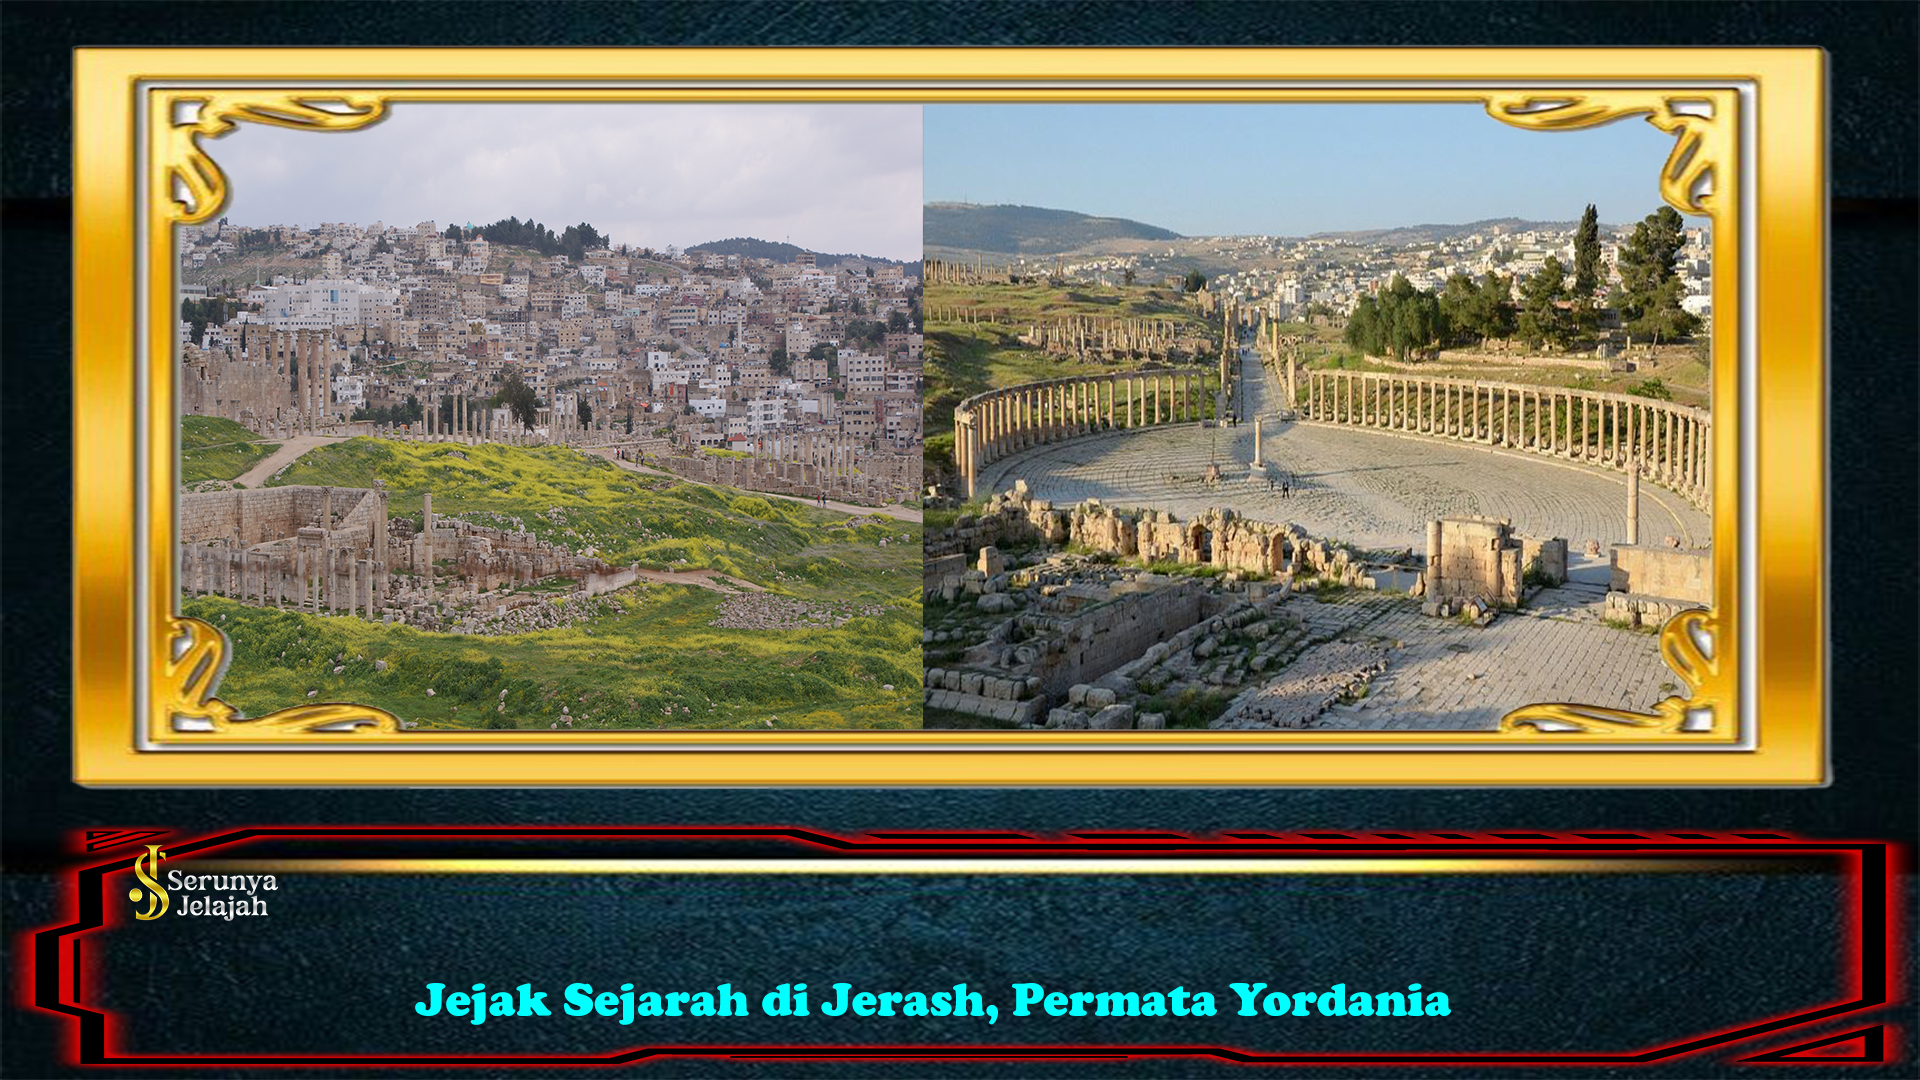 Jejak Sejarah di Jerash, Permata Yordania